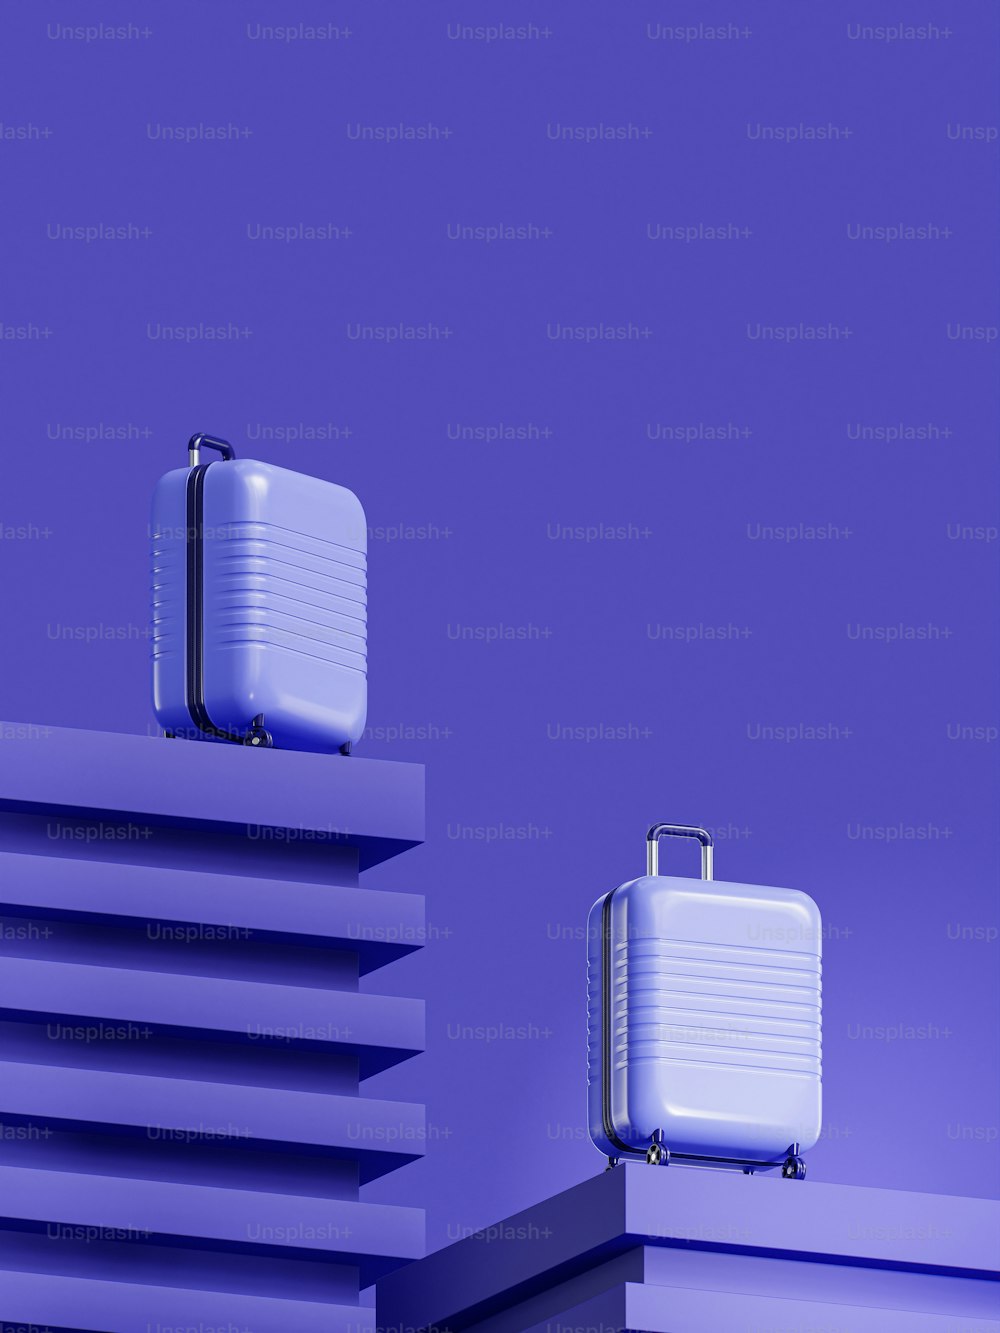 Dos piezas de equipaje sentadas en la parte superior de un edificio